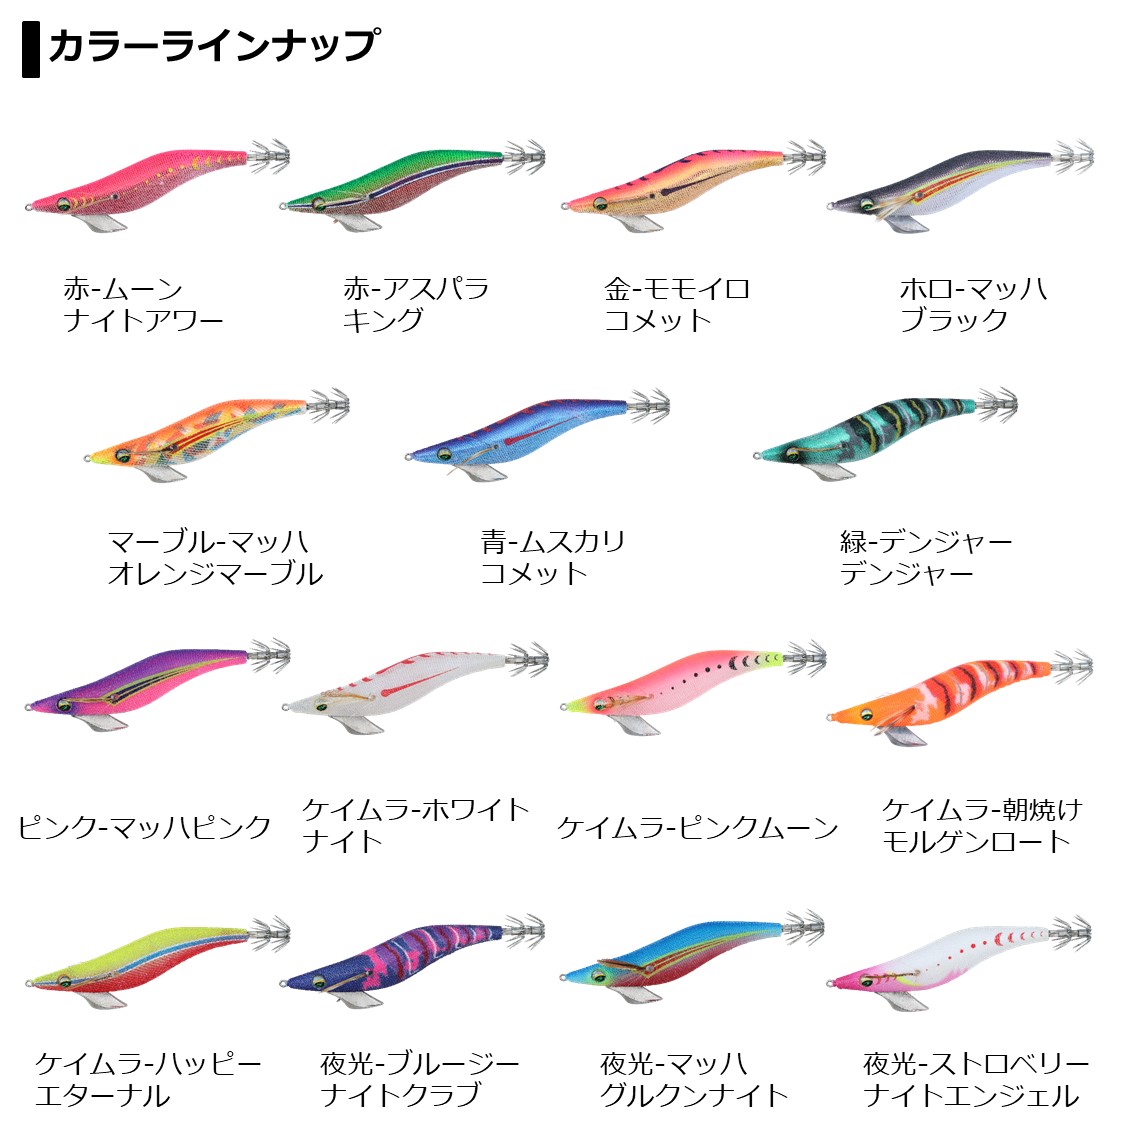 全15色 ダイワ エメラルダスピーク 3 5号 エギング エギ 釣り具の販売 通販なら フィッシング遊 Web本店 ダイワ シマノ がまかつの釣具ならおまかせ